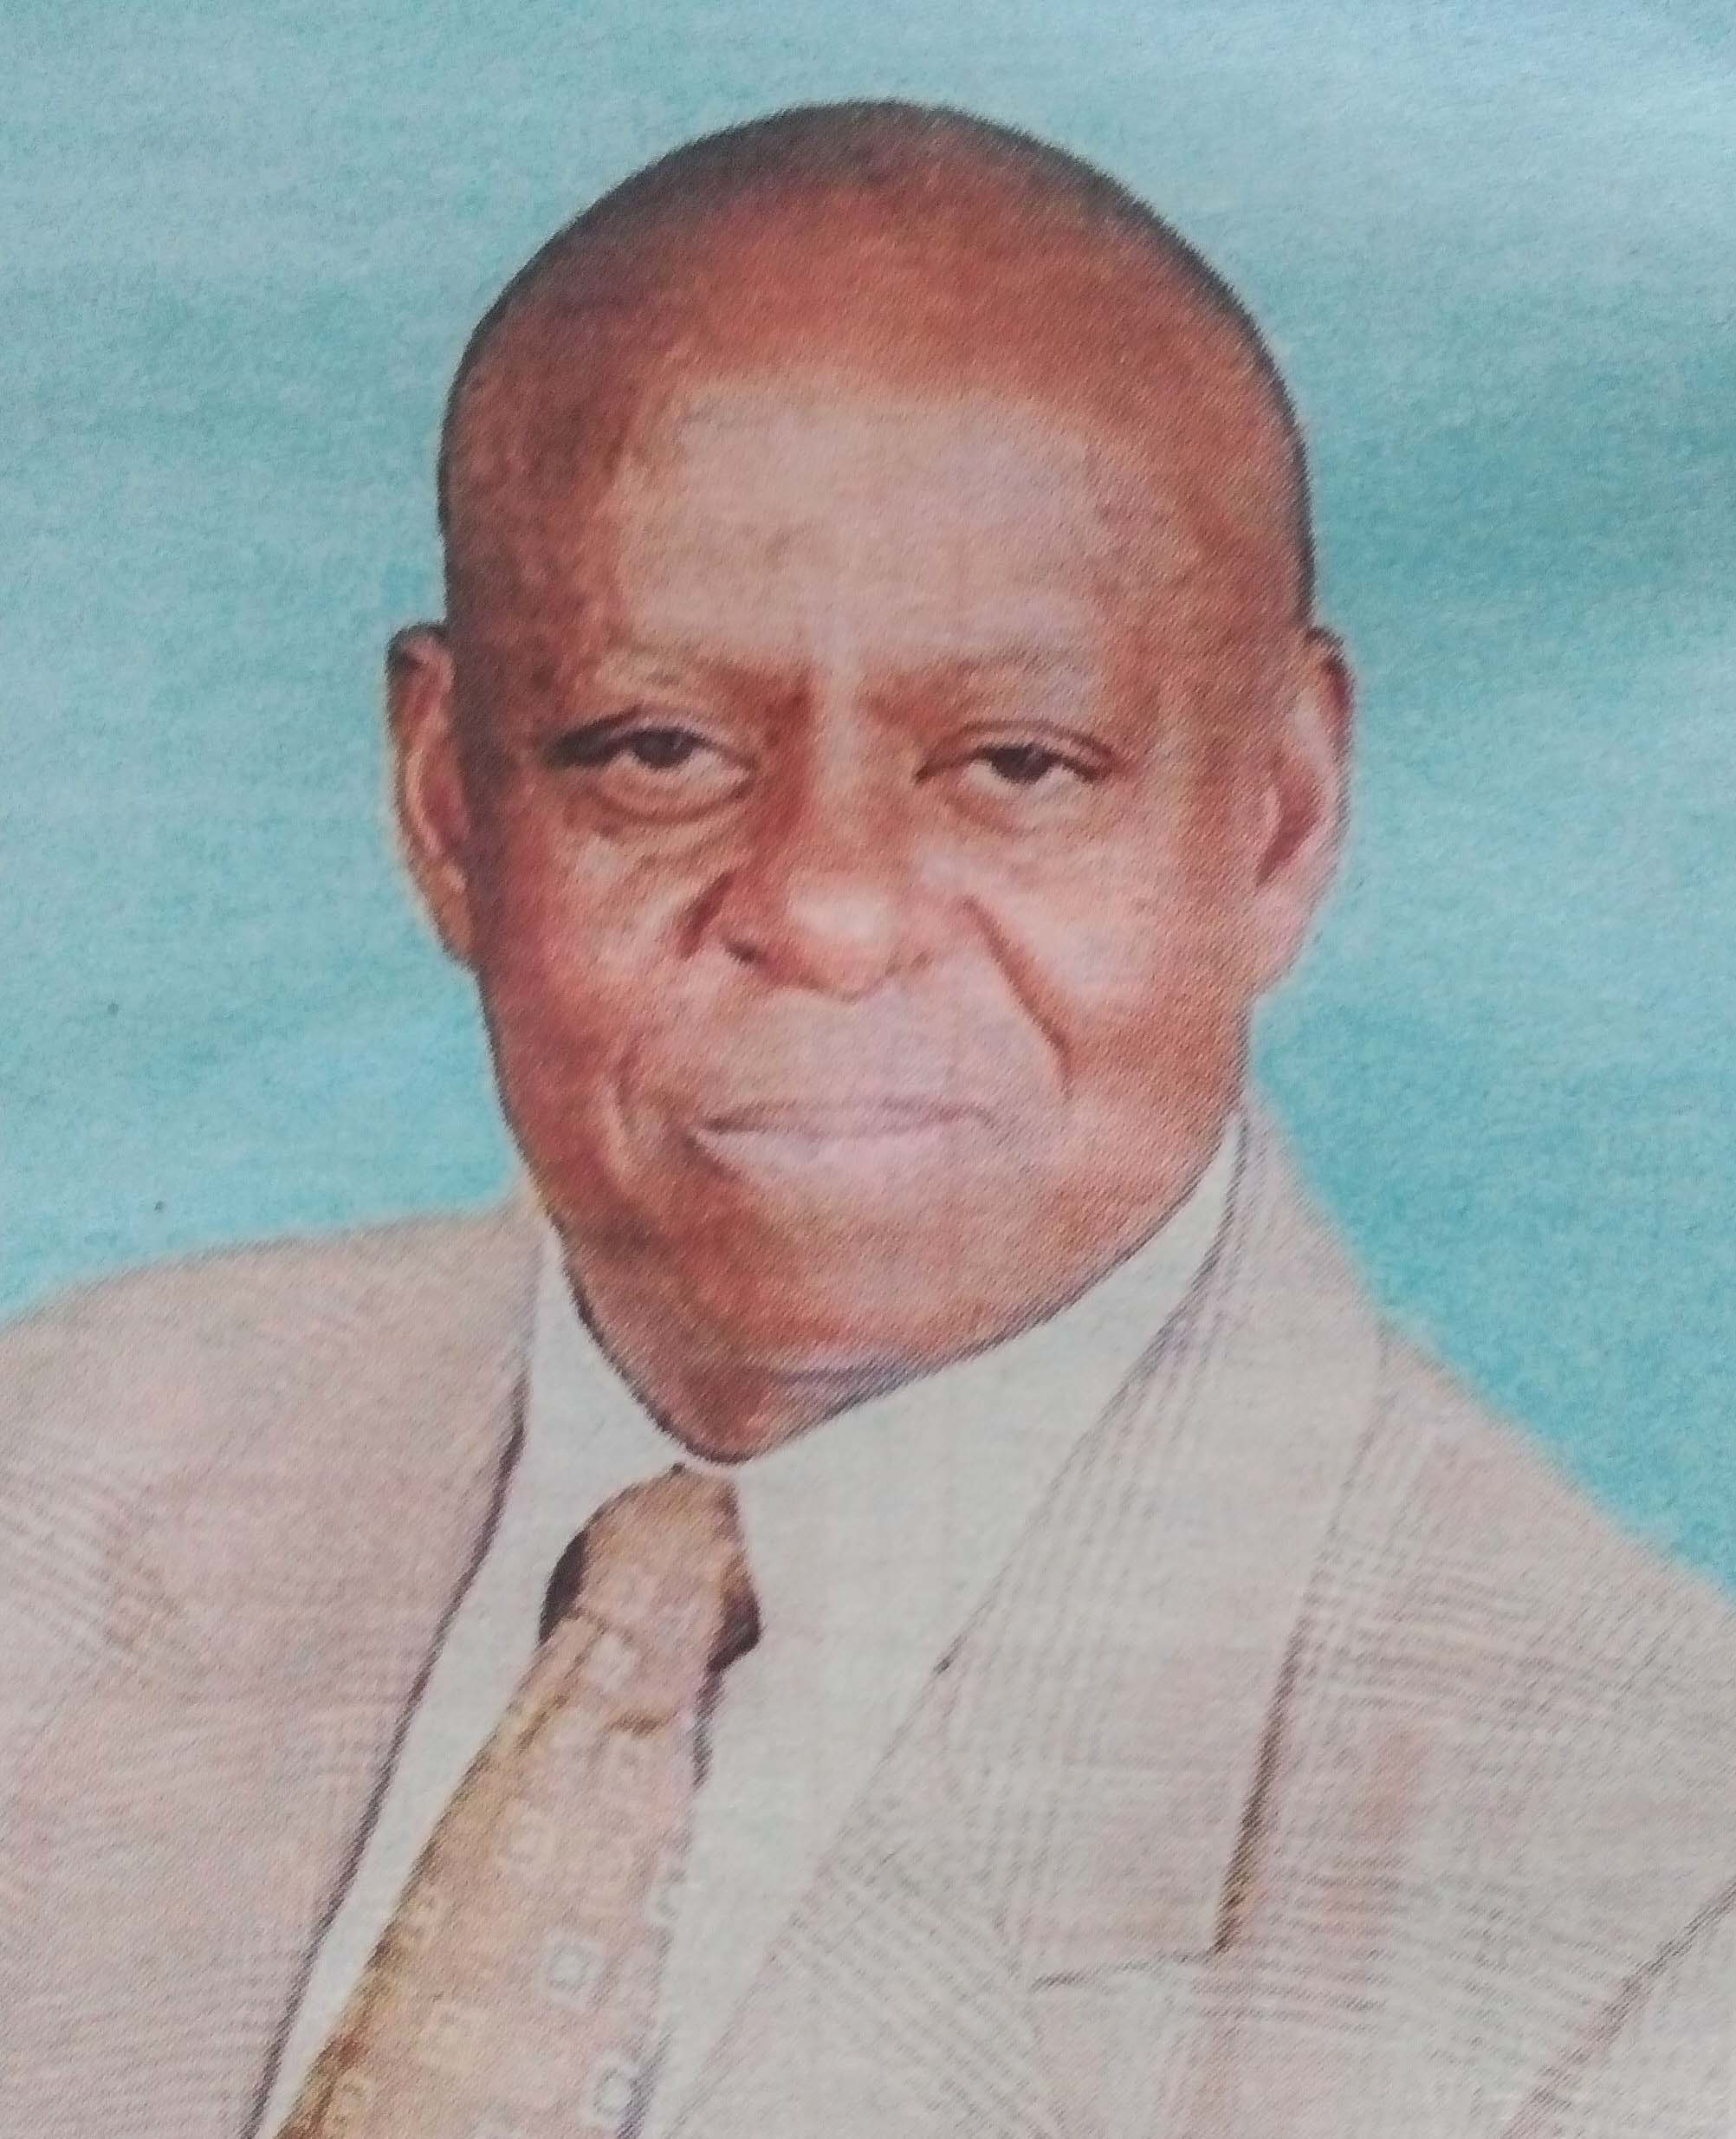 Obituary Image of Dr jotham Tussy Musiime